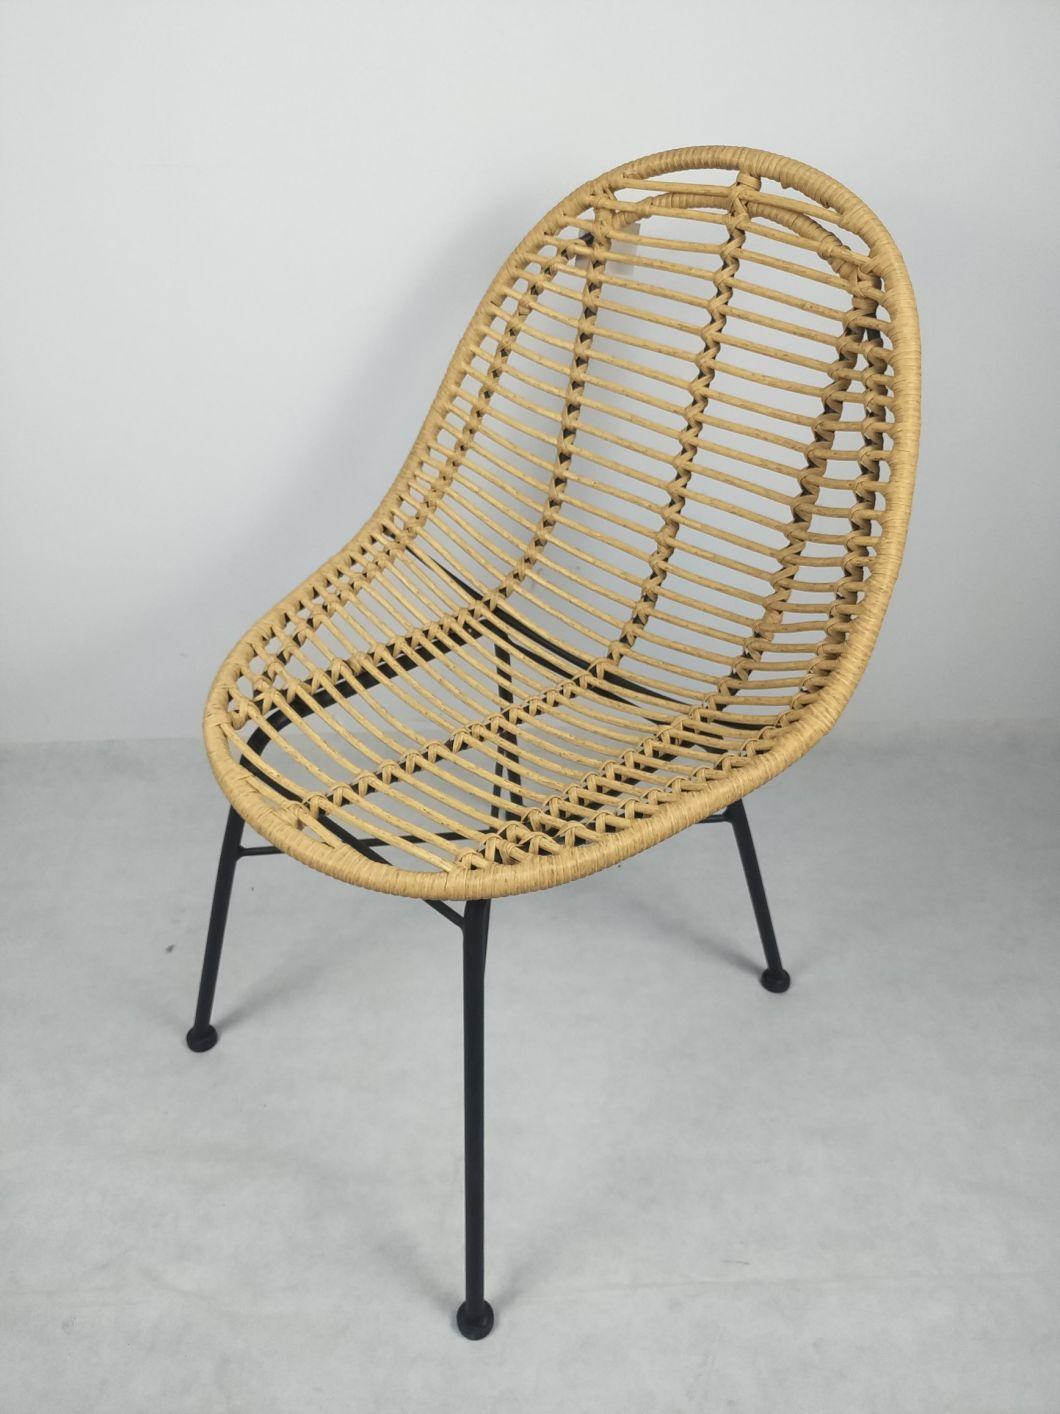 Modern Outdoor Furniture Hot Sales Garden Aluminum Rattan Chair